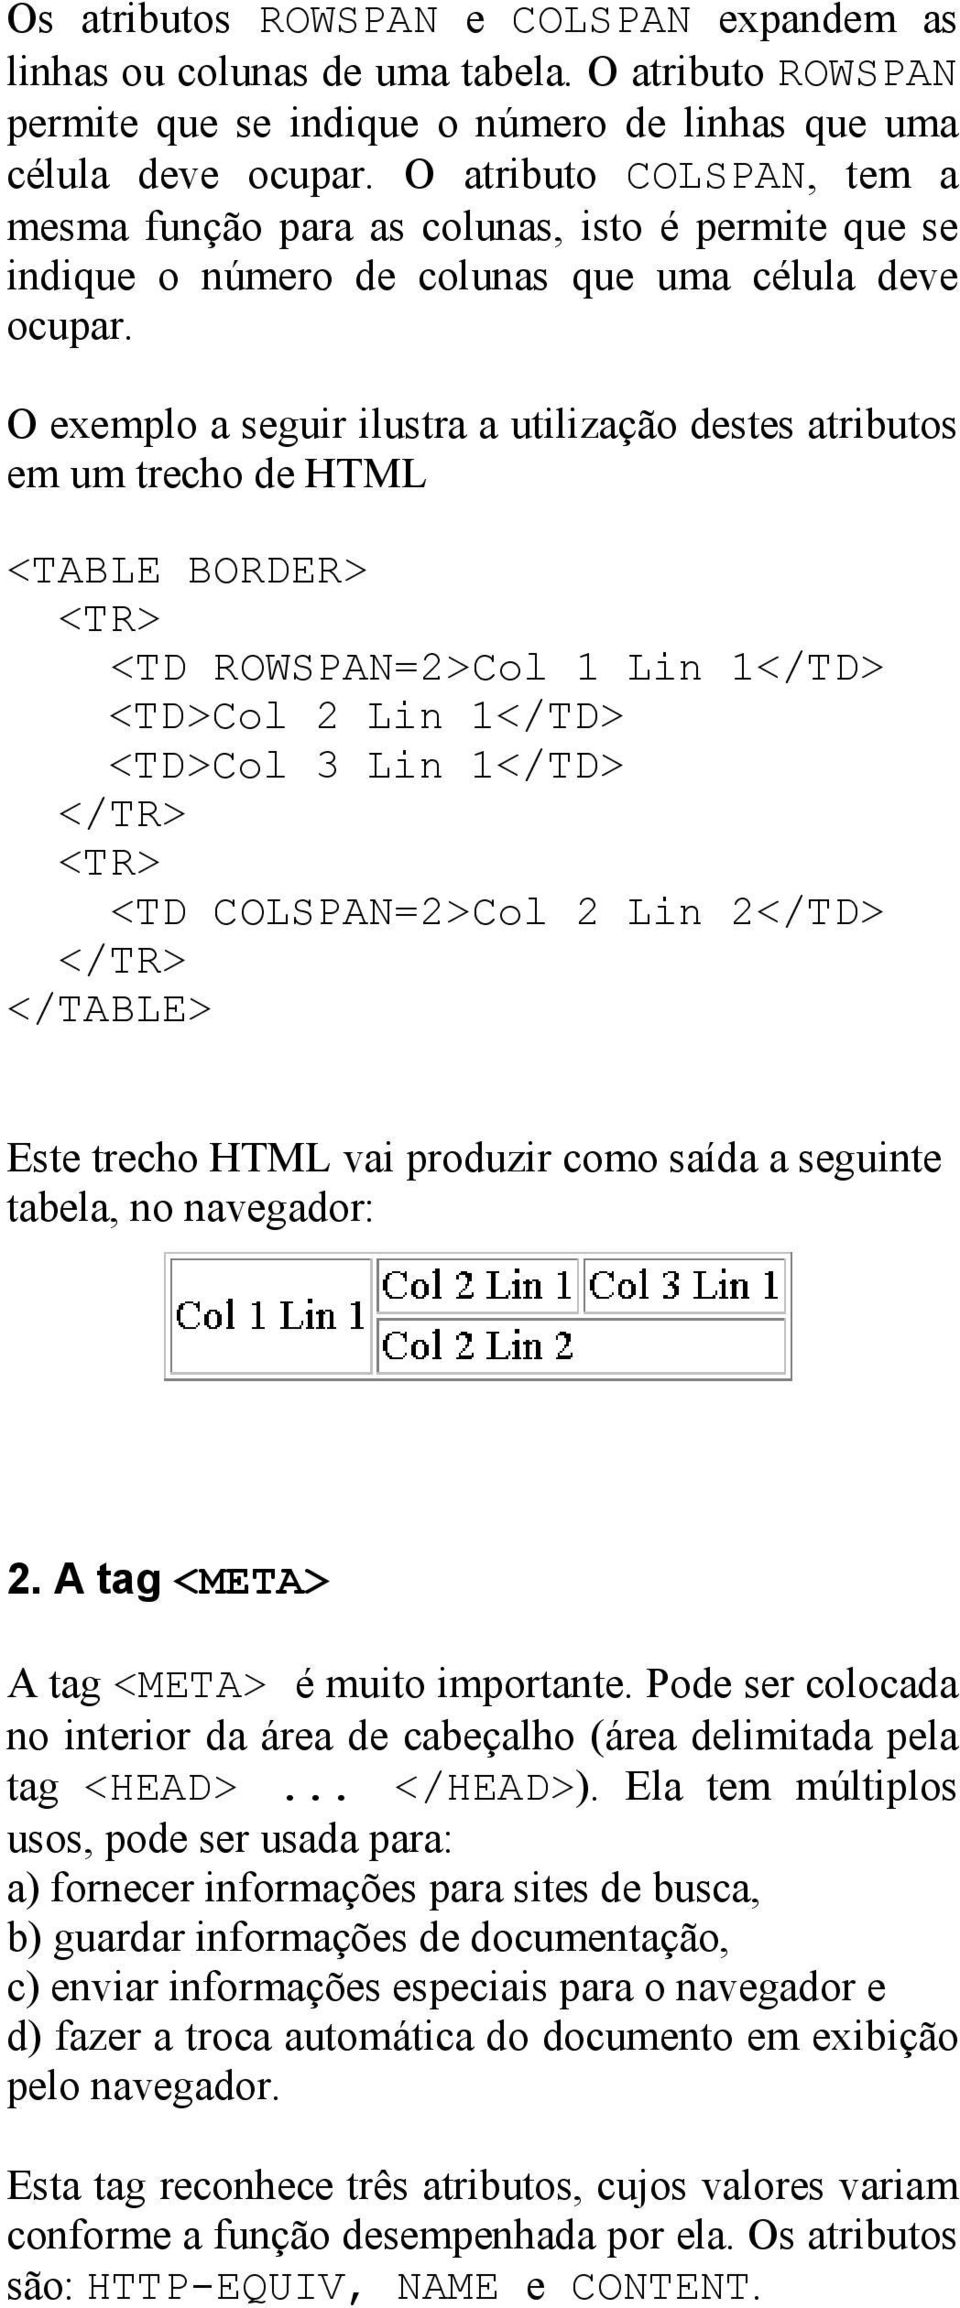 O exemplo a seguir ilustra a utilização destes atributos em um trecho de HTML <TABLE BORDER> <TR> <TD ROWSPAN=2>Col 1 Lin 1</TD> <TD>Col 2 Lin 1</TD> <TD>Col 3 Lin 1</TD> </TR> <TR> <TD COLSPAN=2>Col